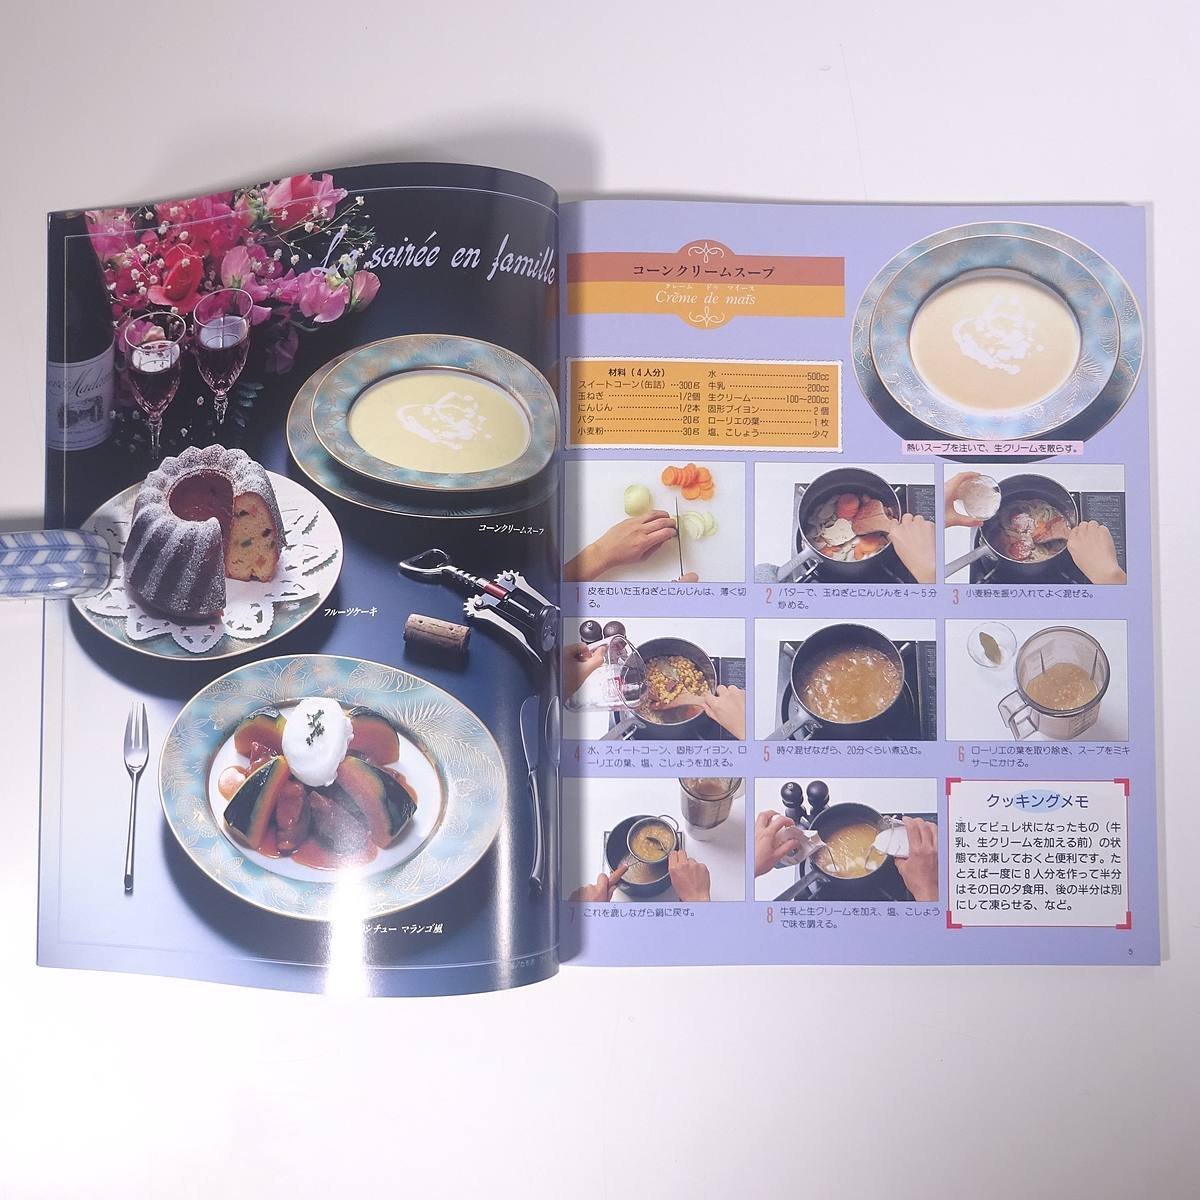 あなたにもできる かんたんフランス家庭料理 PARTⅡ ブティック社 1992 大型本 料理 献立 レシピ フランス料理 家庭料理_画像6